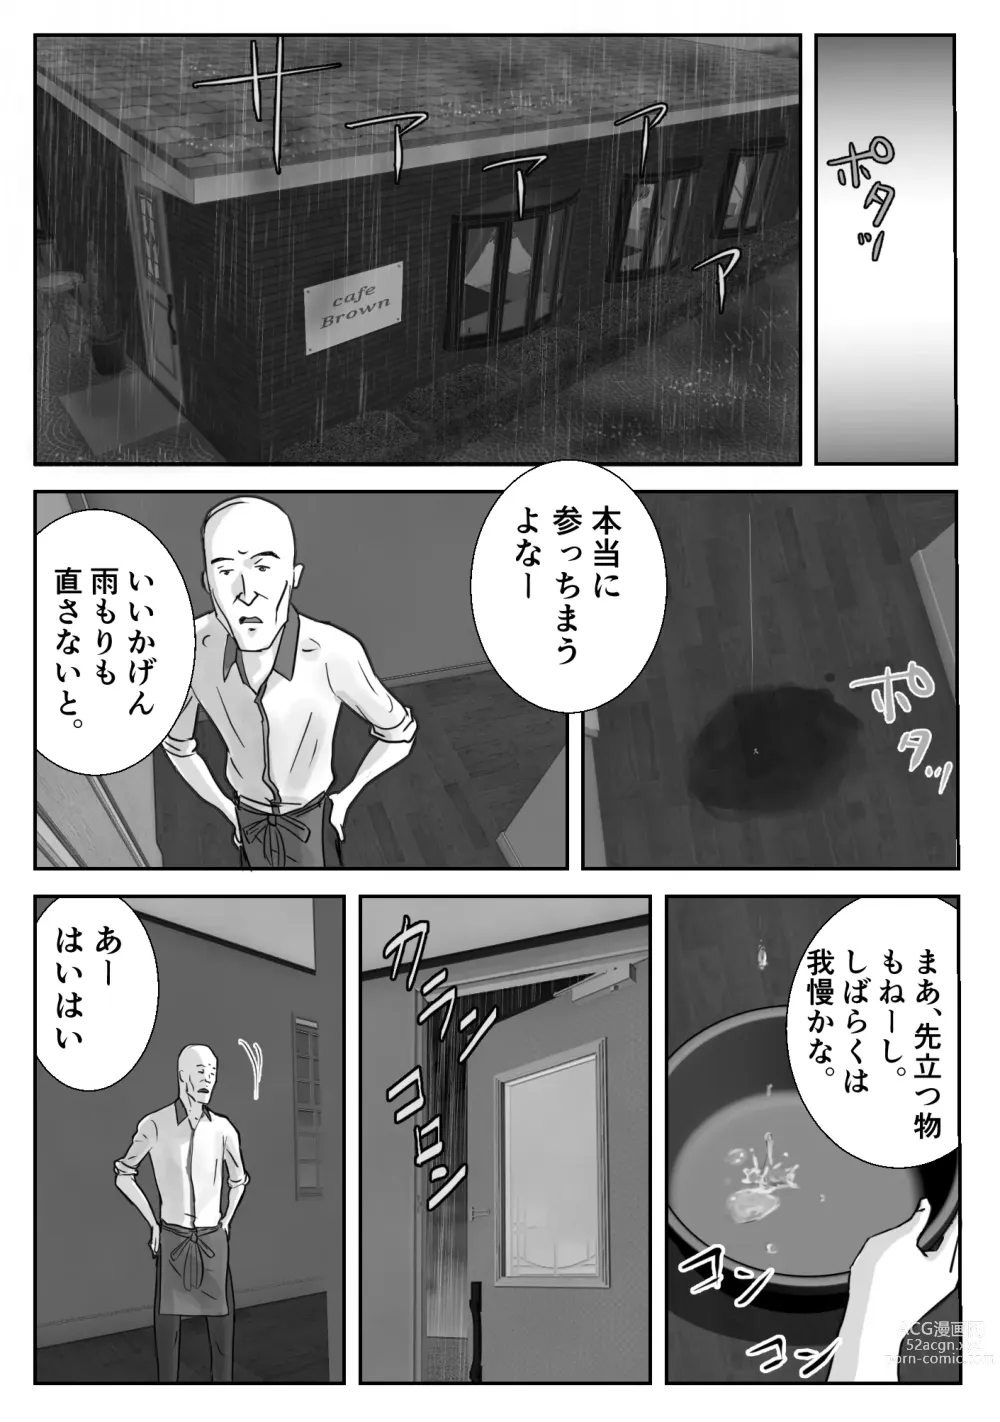 Page 3 of doujinshi Ano Hi no Uso 3